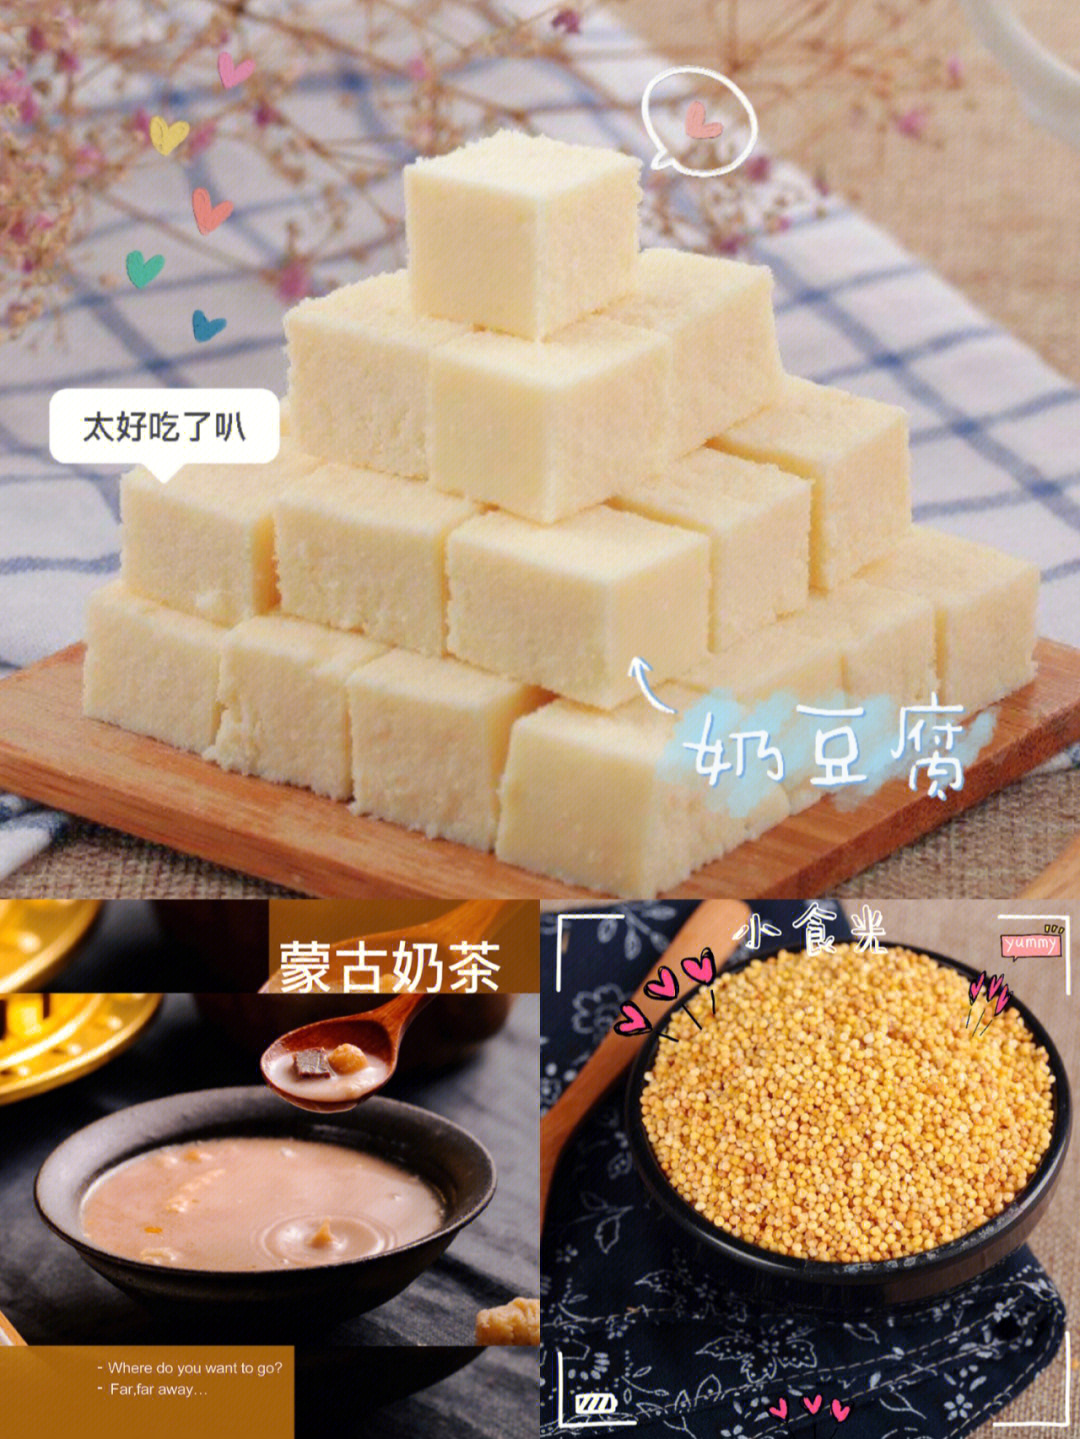 奶豆腐的简易吃法图片